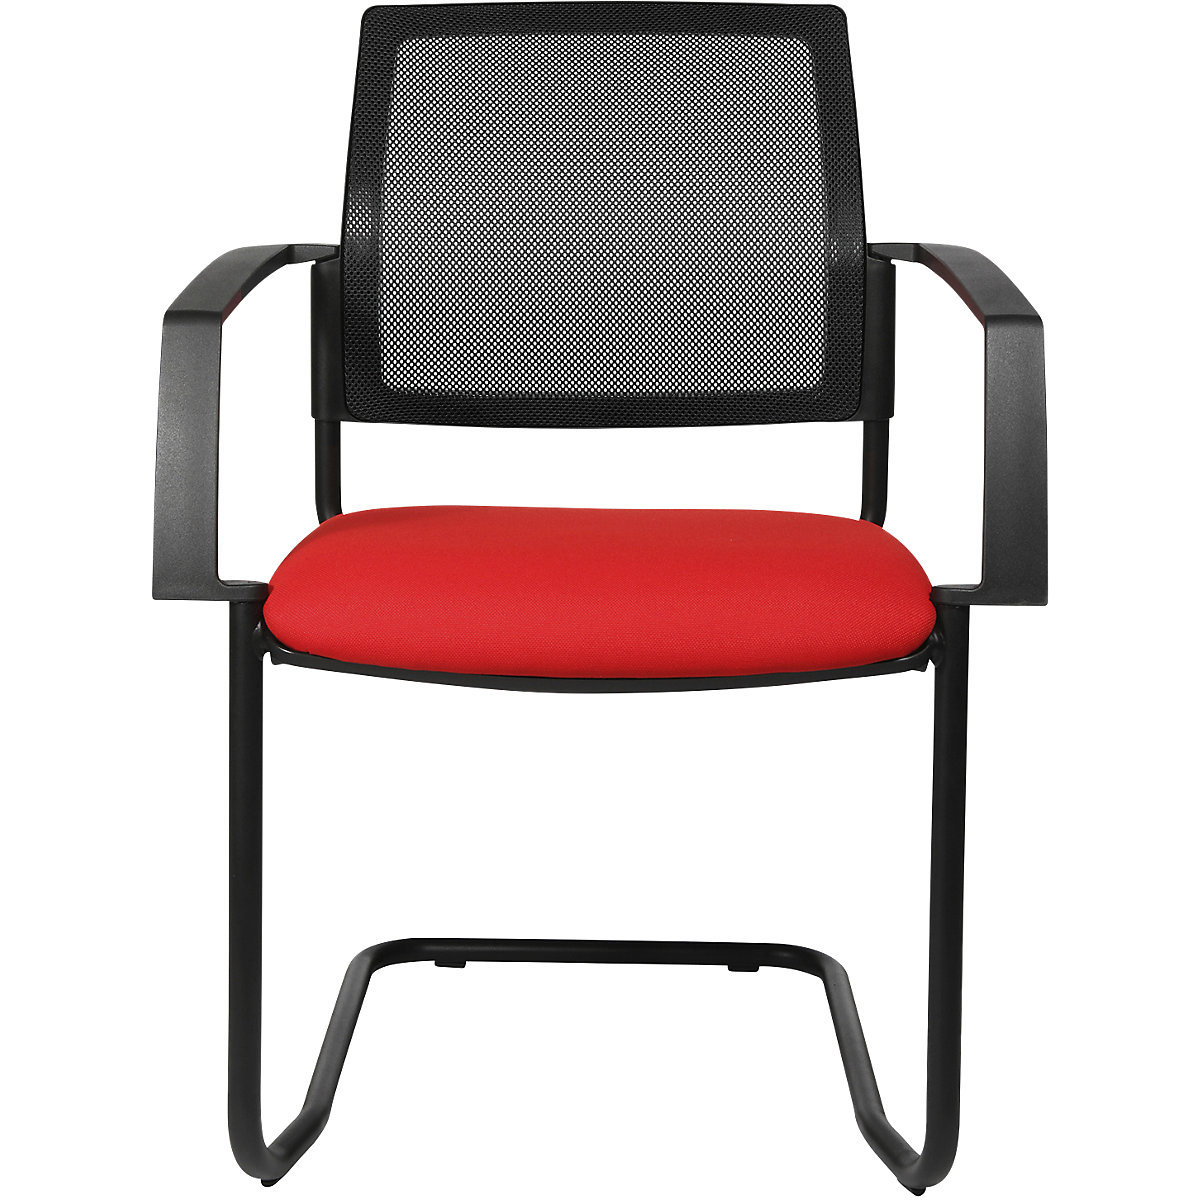 Složiva stolica s mrežastim naslonom – Topstar, konzolna stolica, pak. 2 kom., sjedalo u crvenoj boji, postolje u crnoj boji